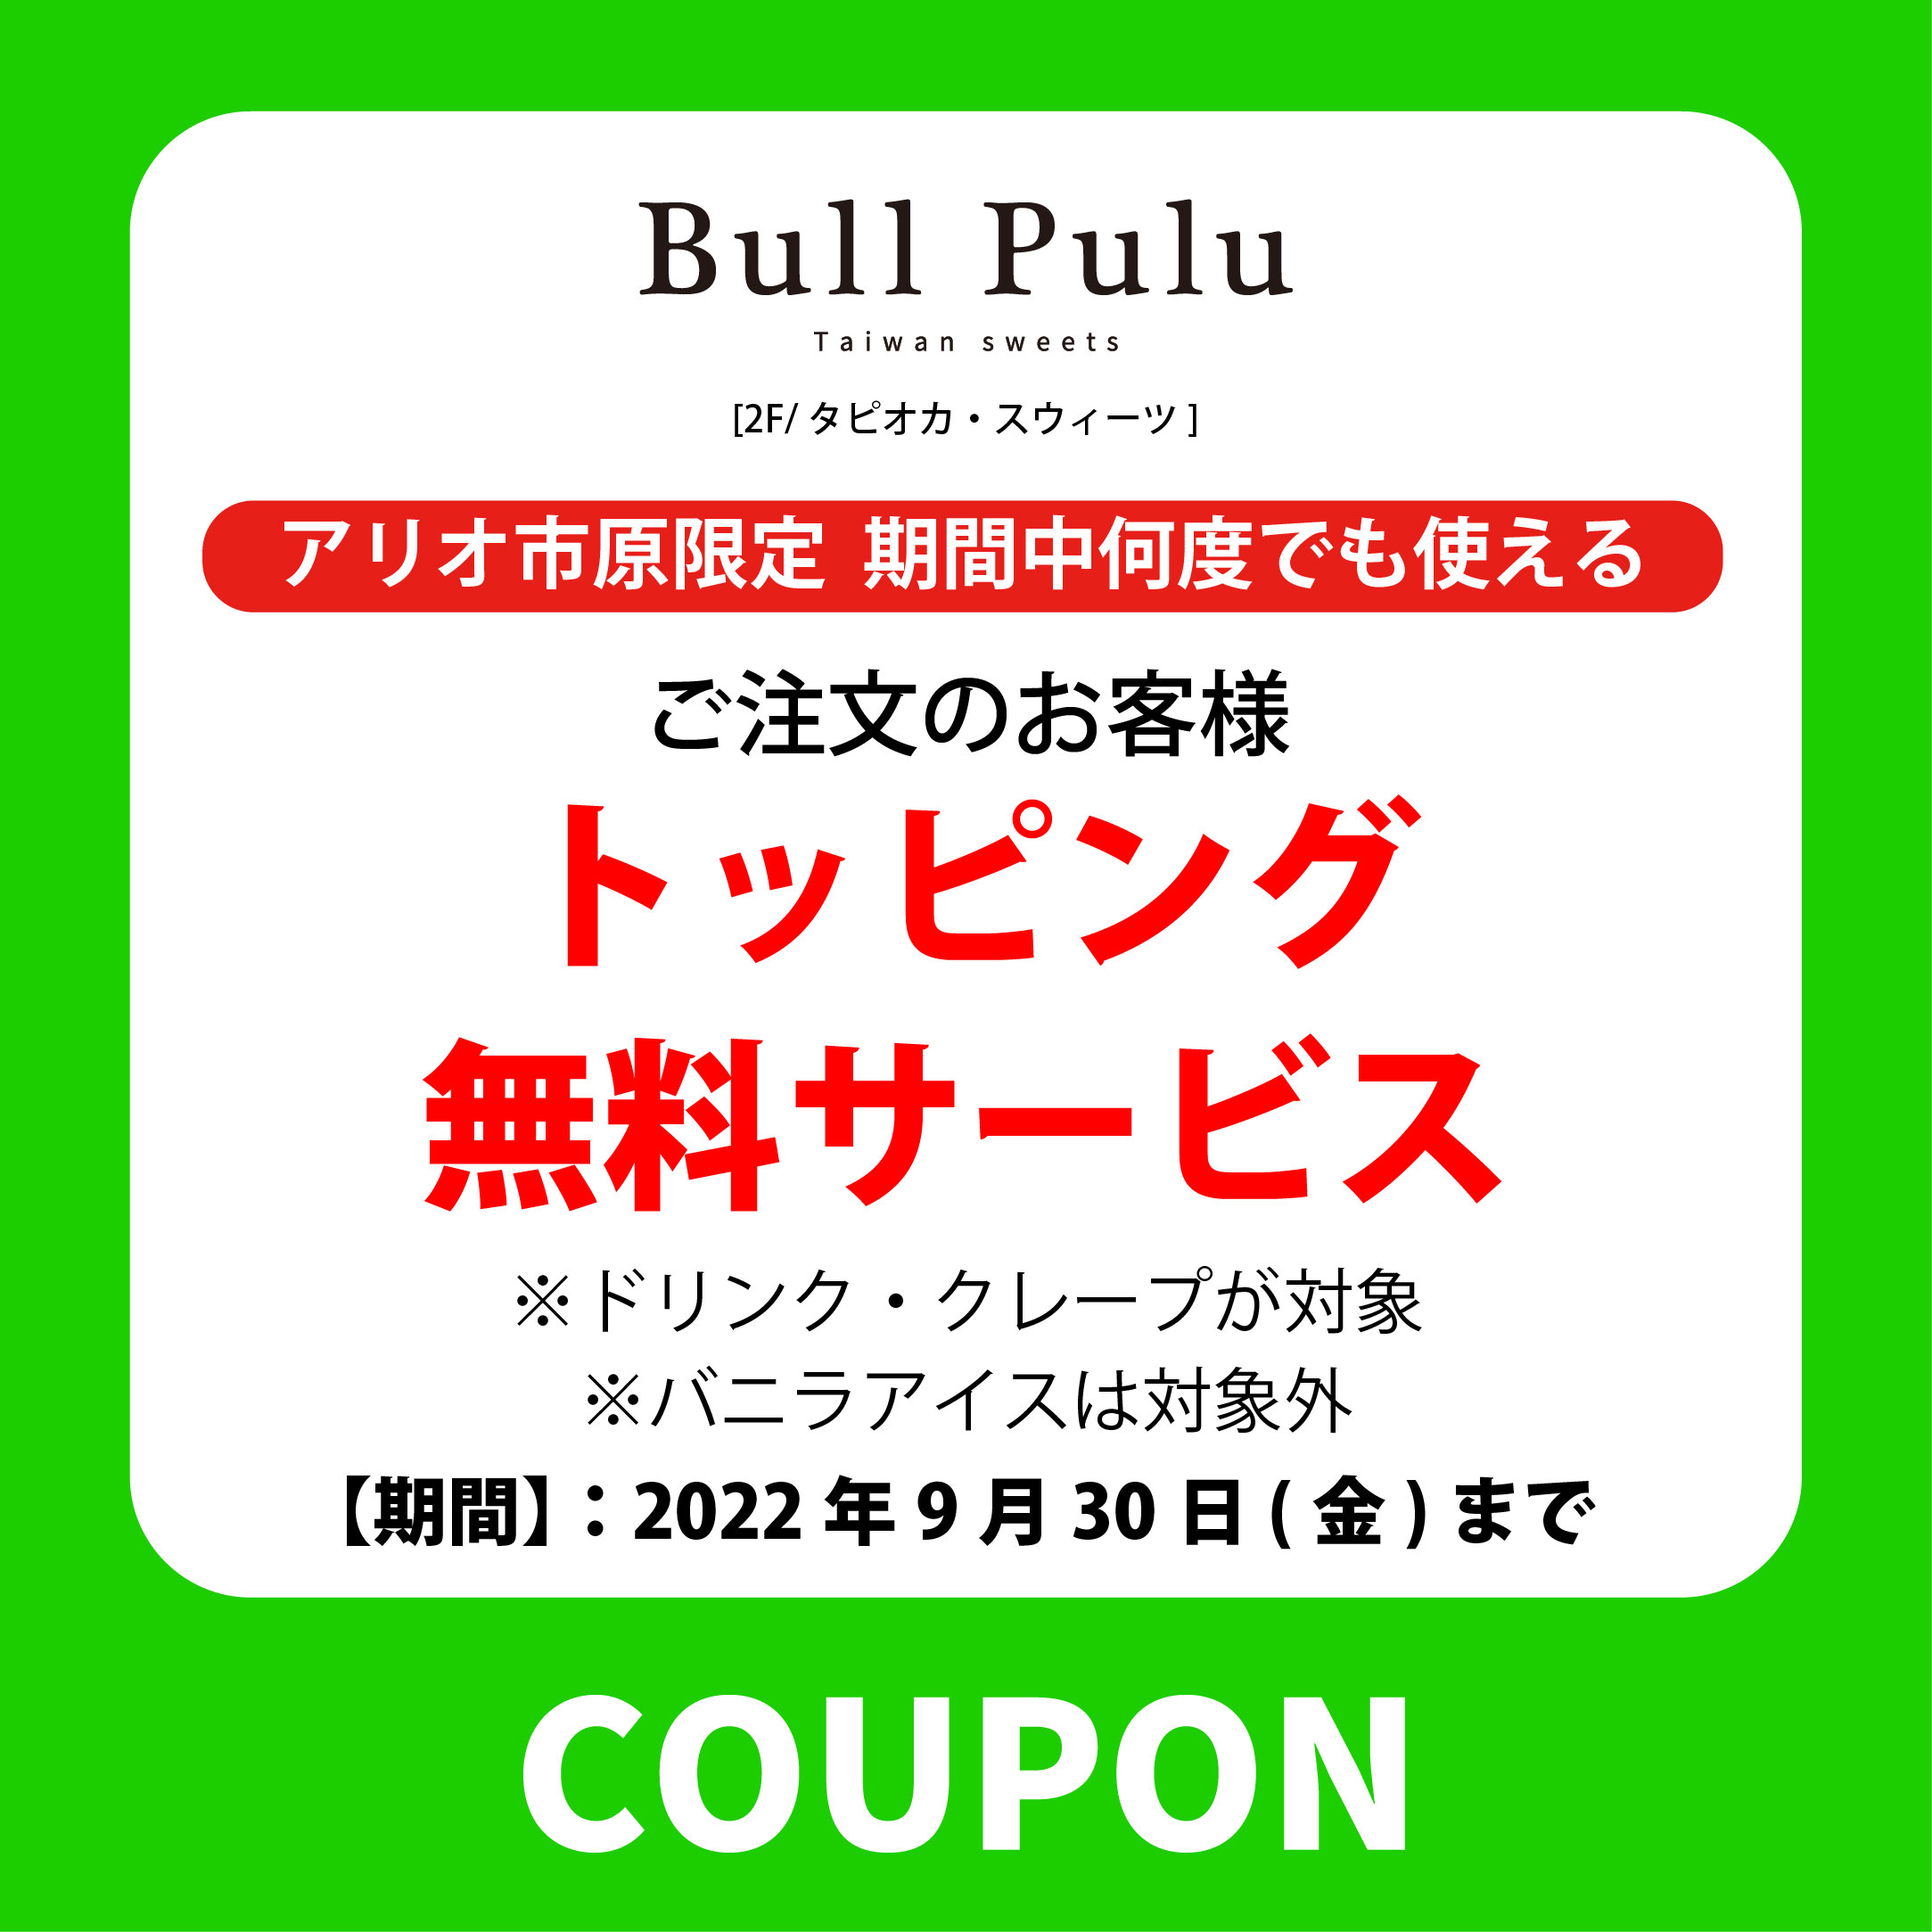 BullPulu.jpg